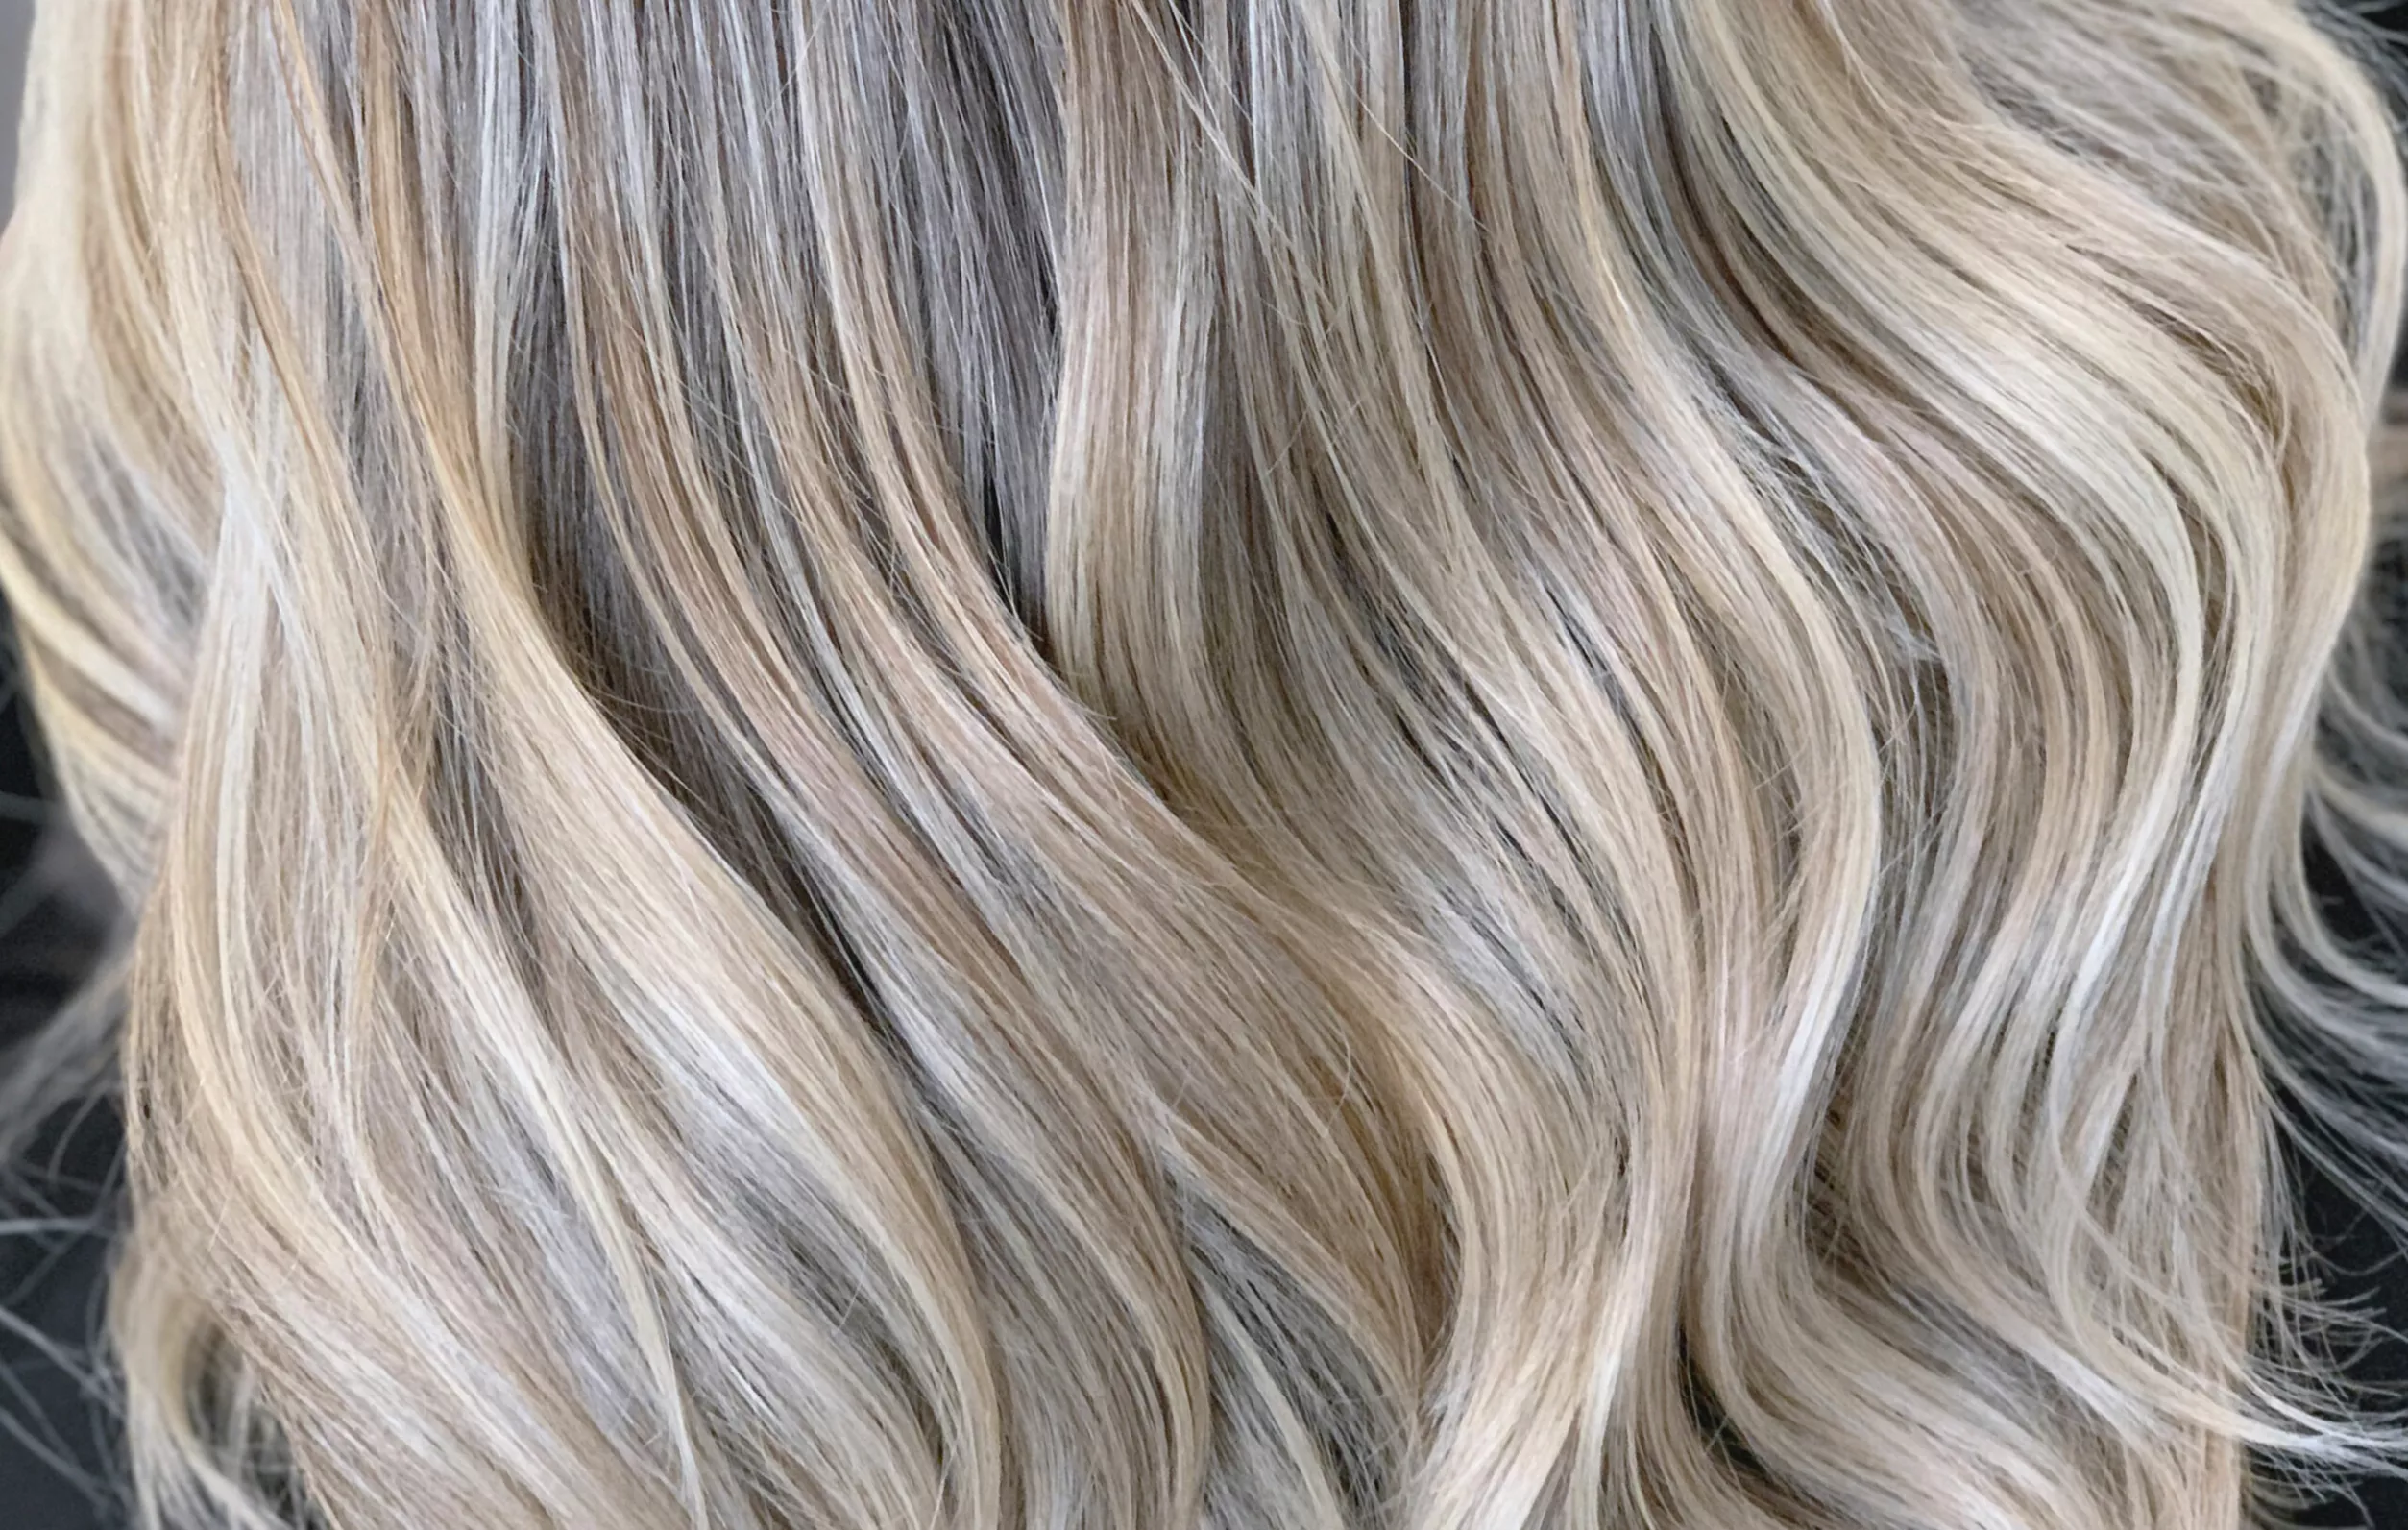 Olaplex tai muu hiusten tehohoito auttaa erityisesti vaalennuksissa. Kuvassa vaaleat hiukset.